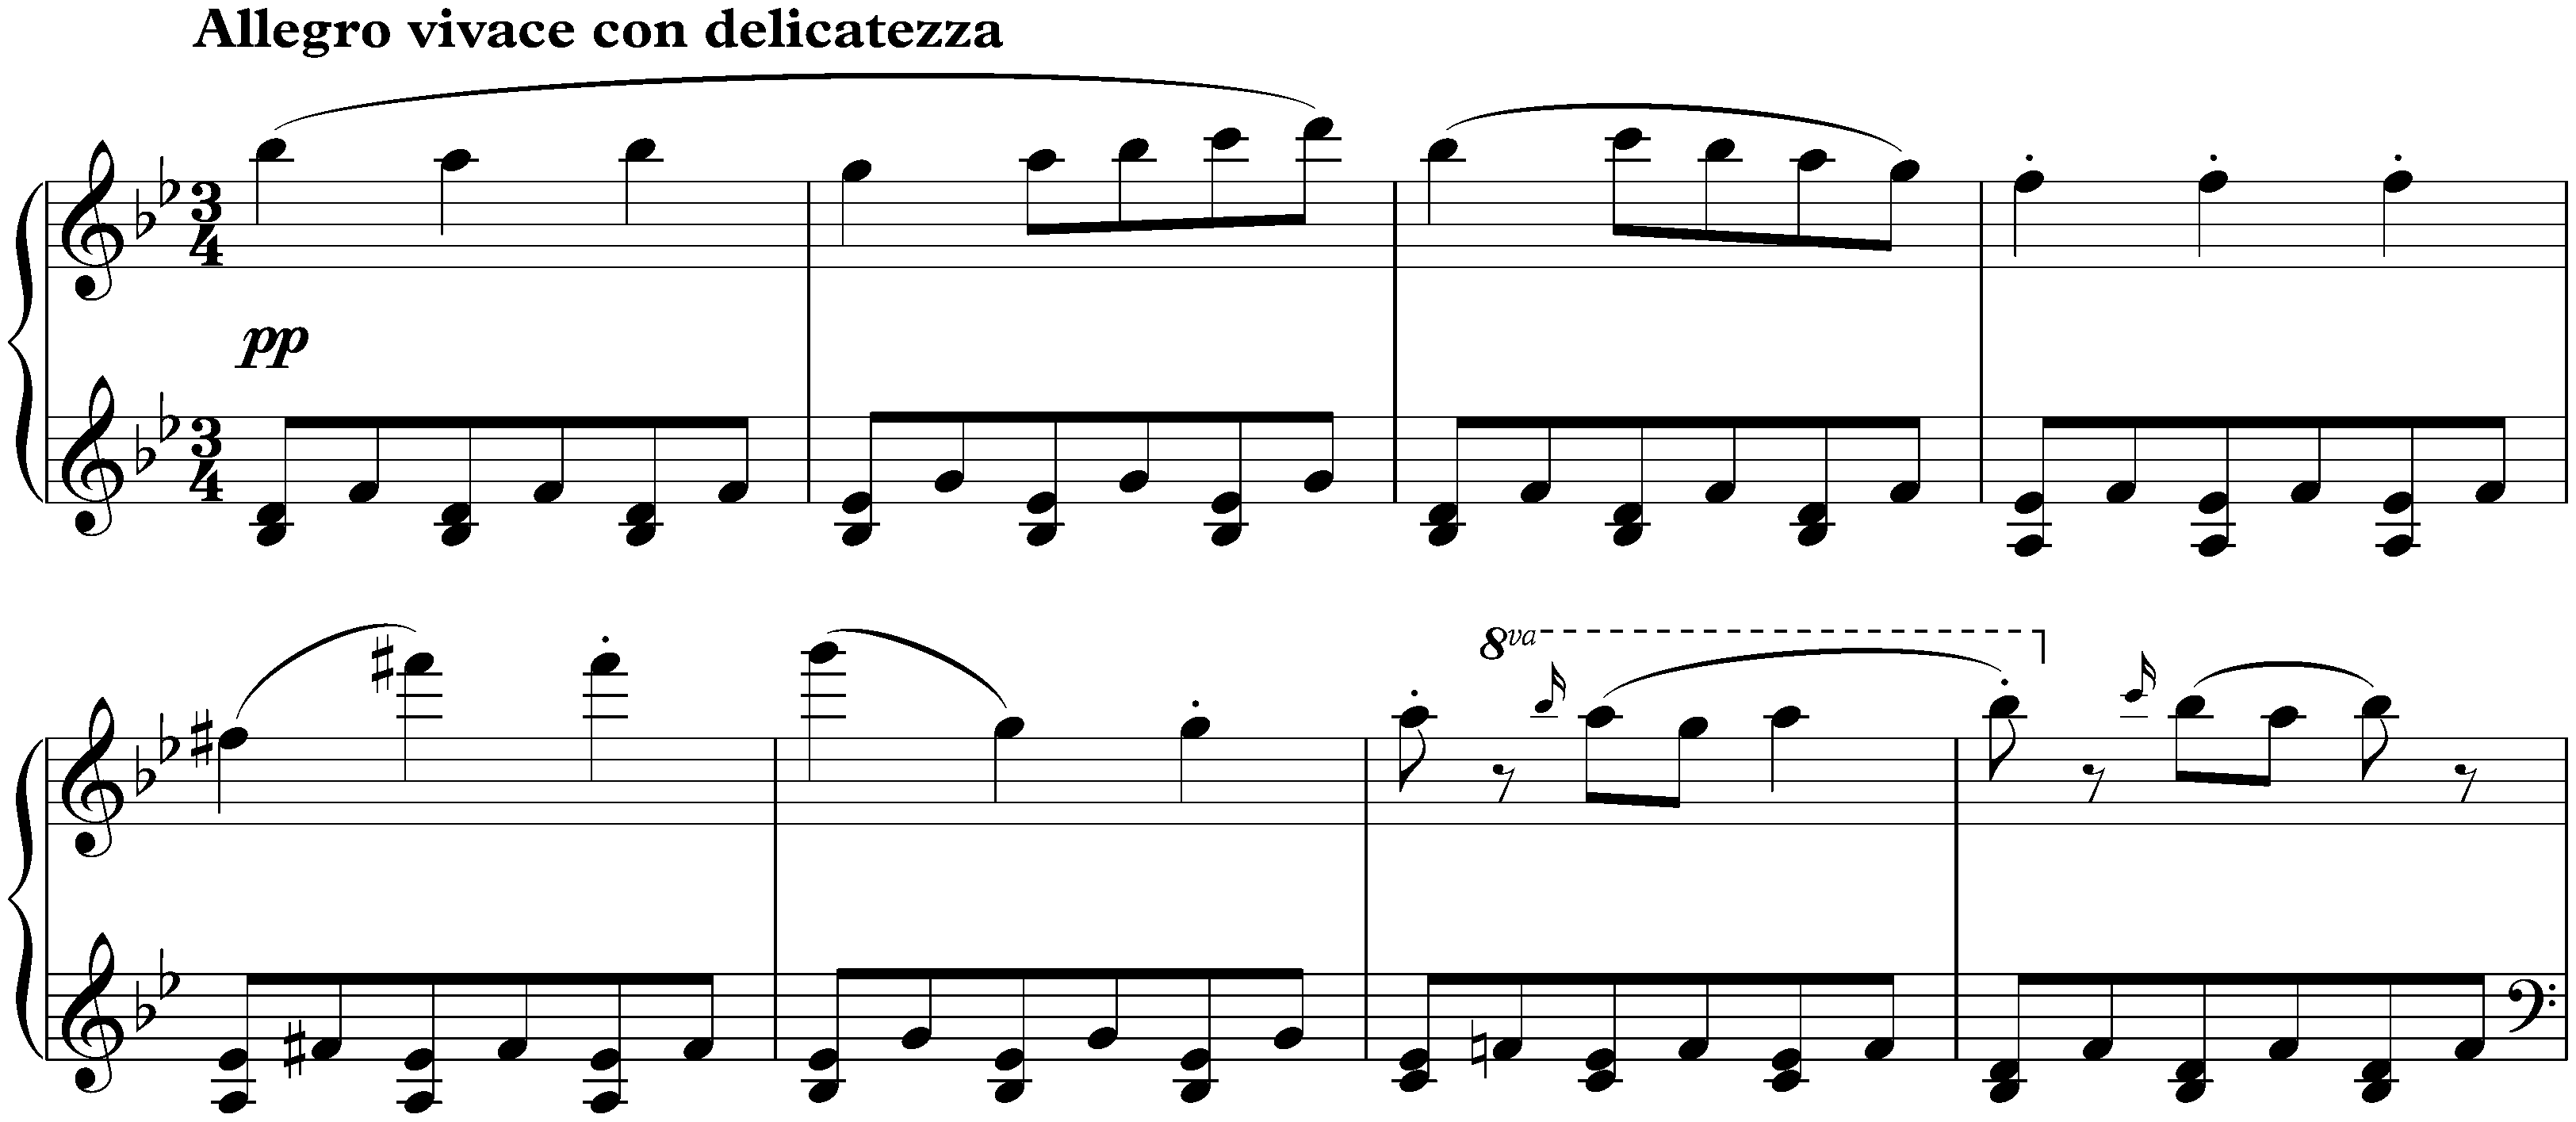 Sonata in B-flat major, D 960; 3. Scherzo: Allegro vivace con delicatezza